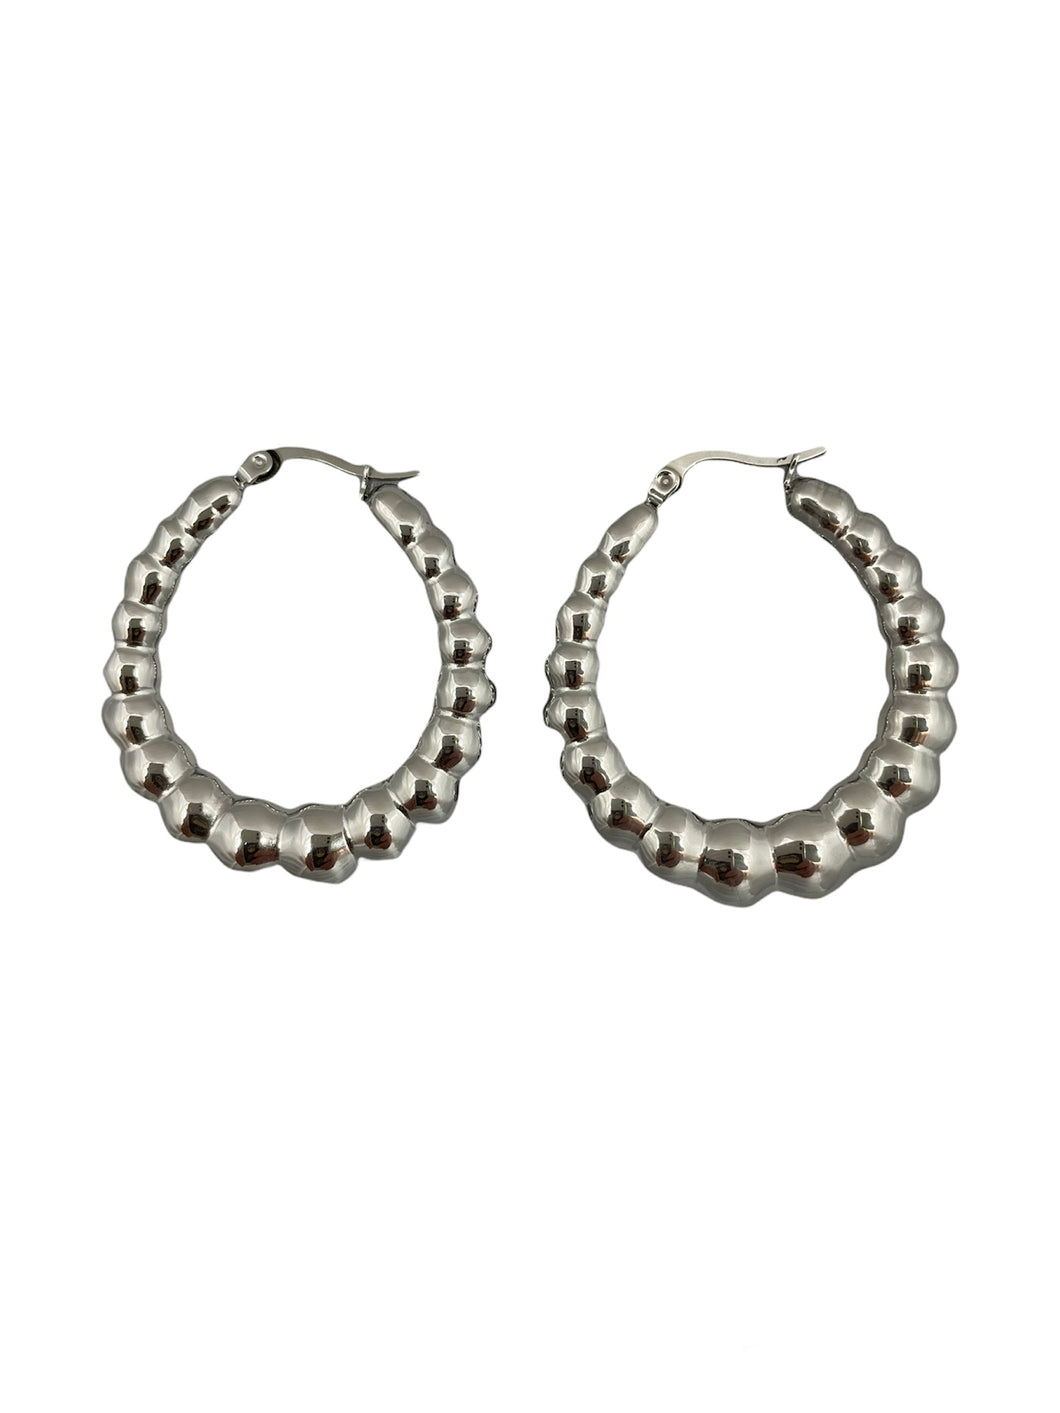 Zilveren oorbellen Noor zijn mooie statement oorbellen. Oorbellen Noor zijn verkrijgbaar in goud- en zilverkleurig stainless steel en hebben een diameter van ca. 4cm.